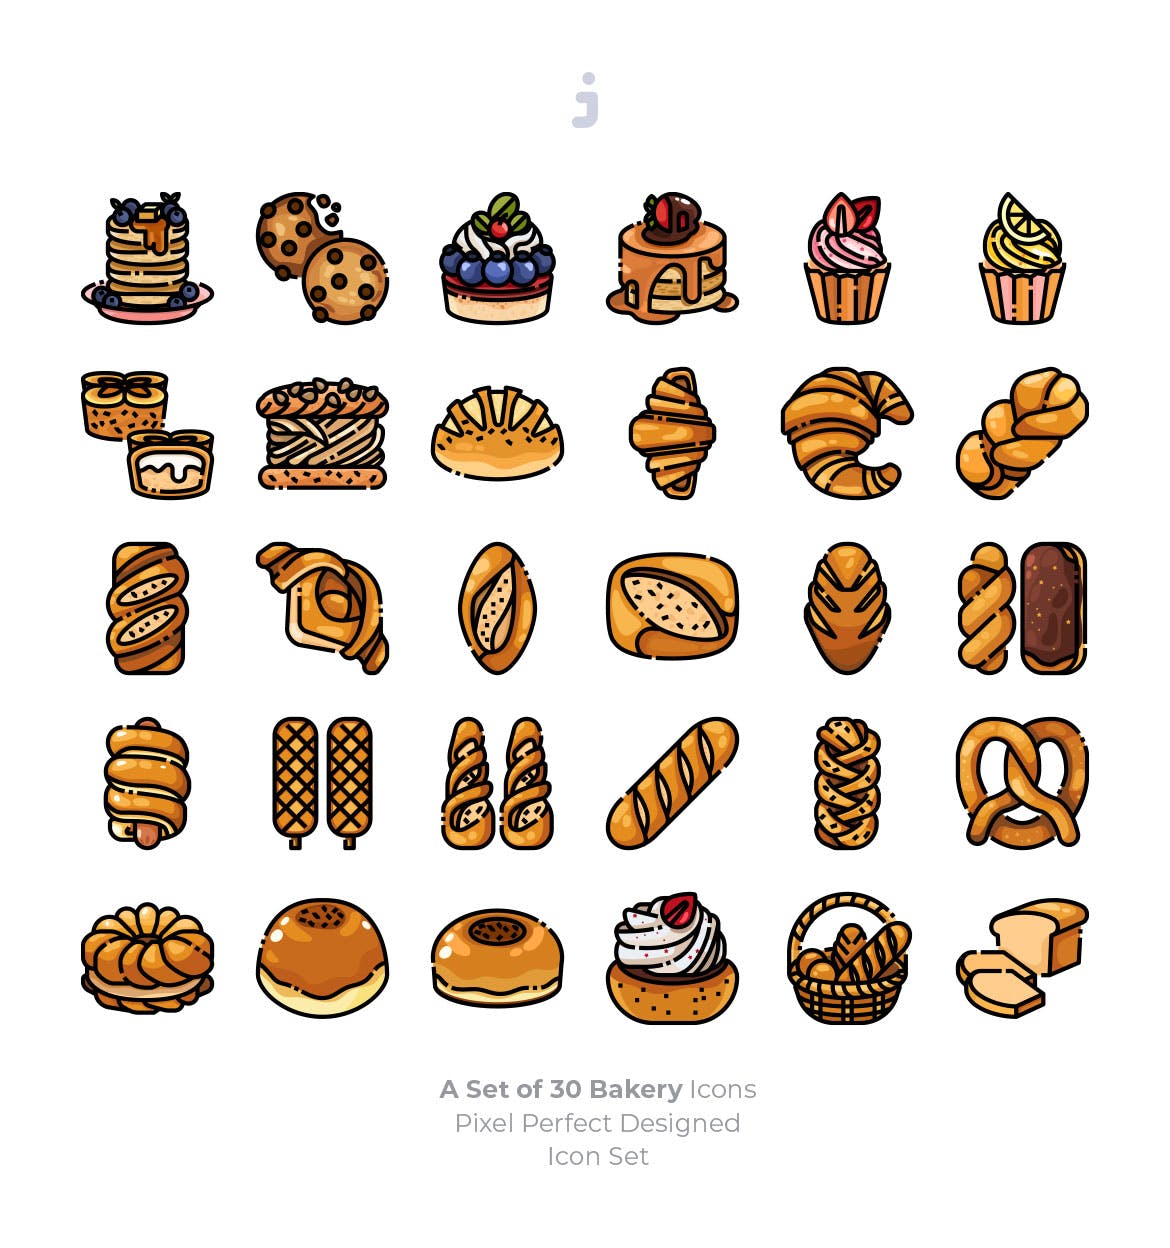 30枚西式面包烘焙主题矢量图标 30 Bakery Icons插图(1)